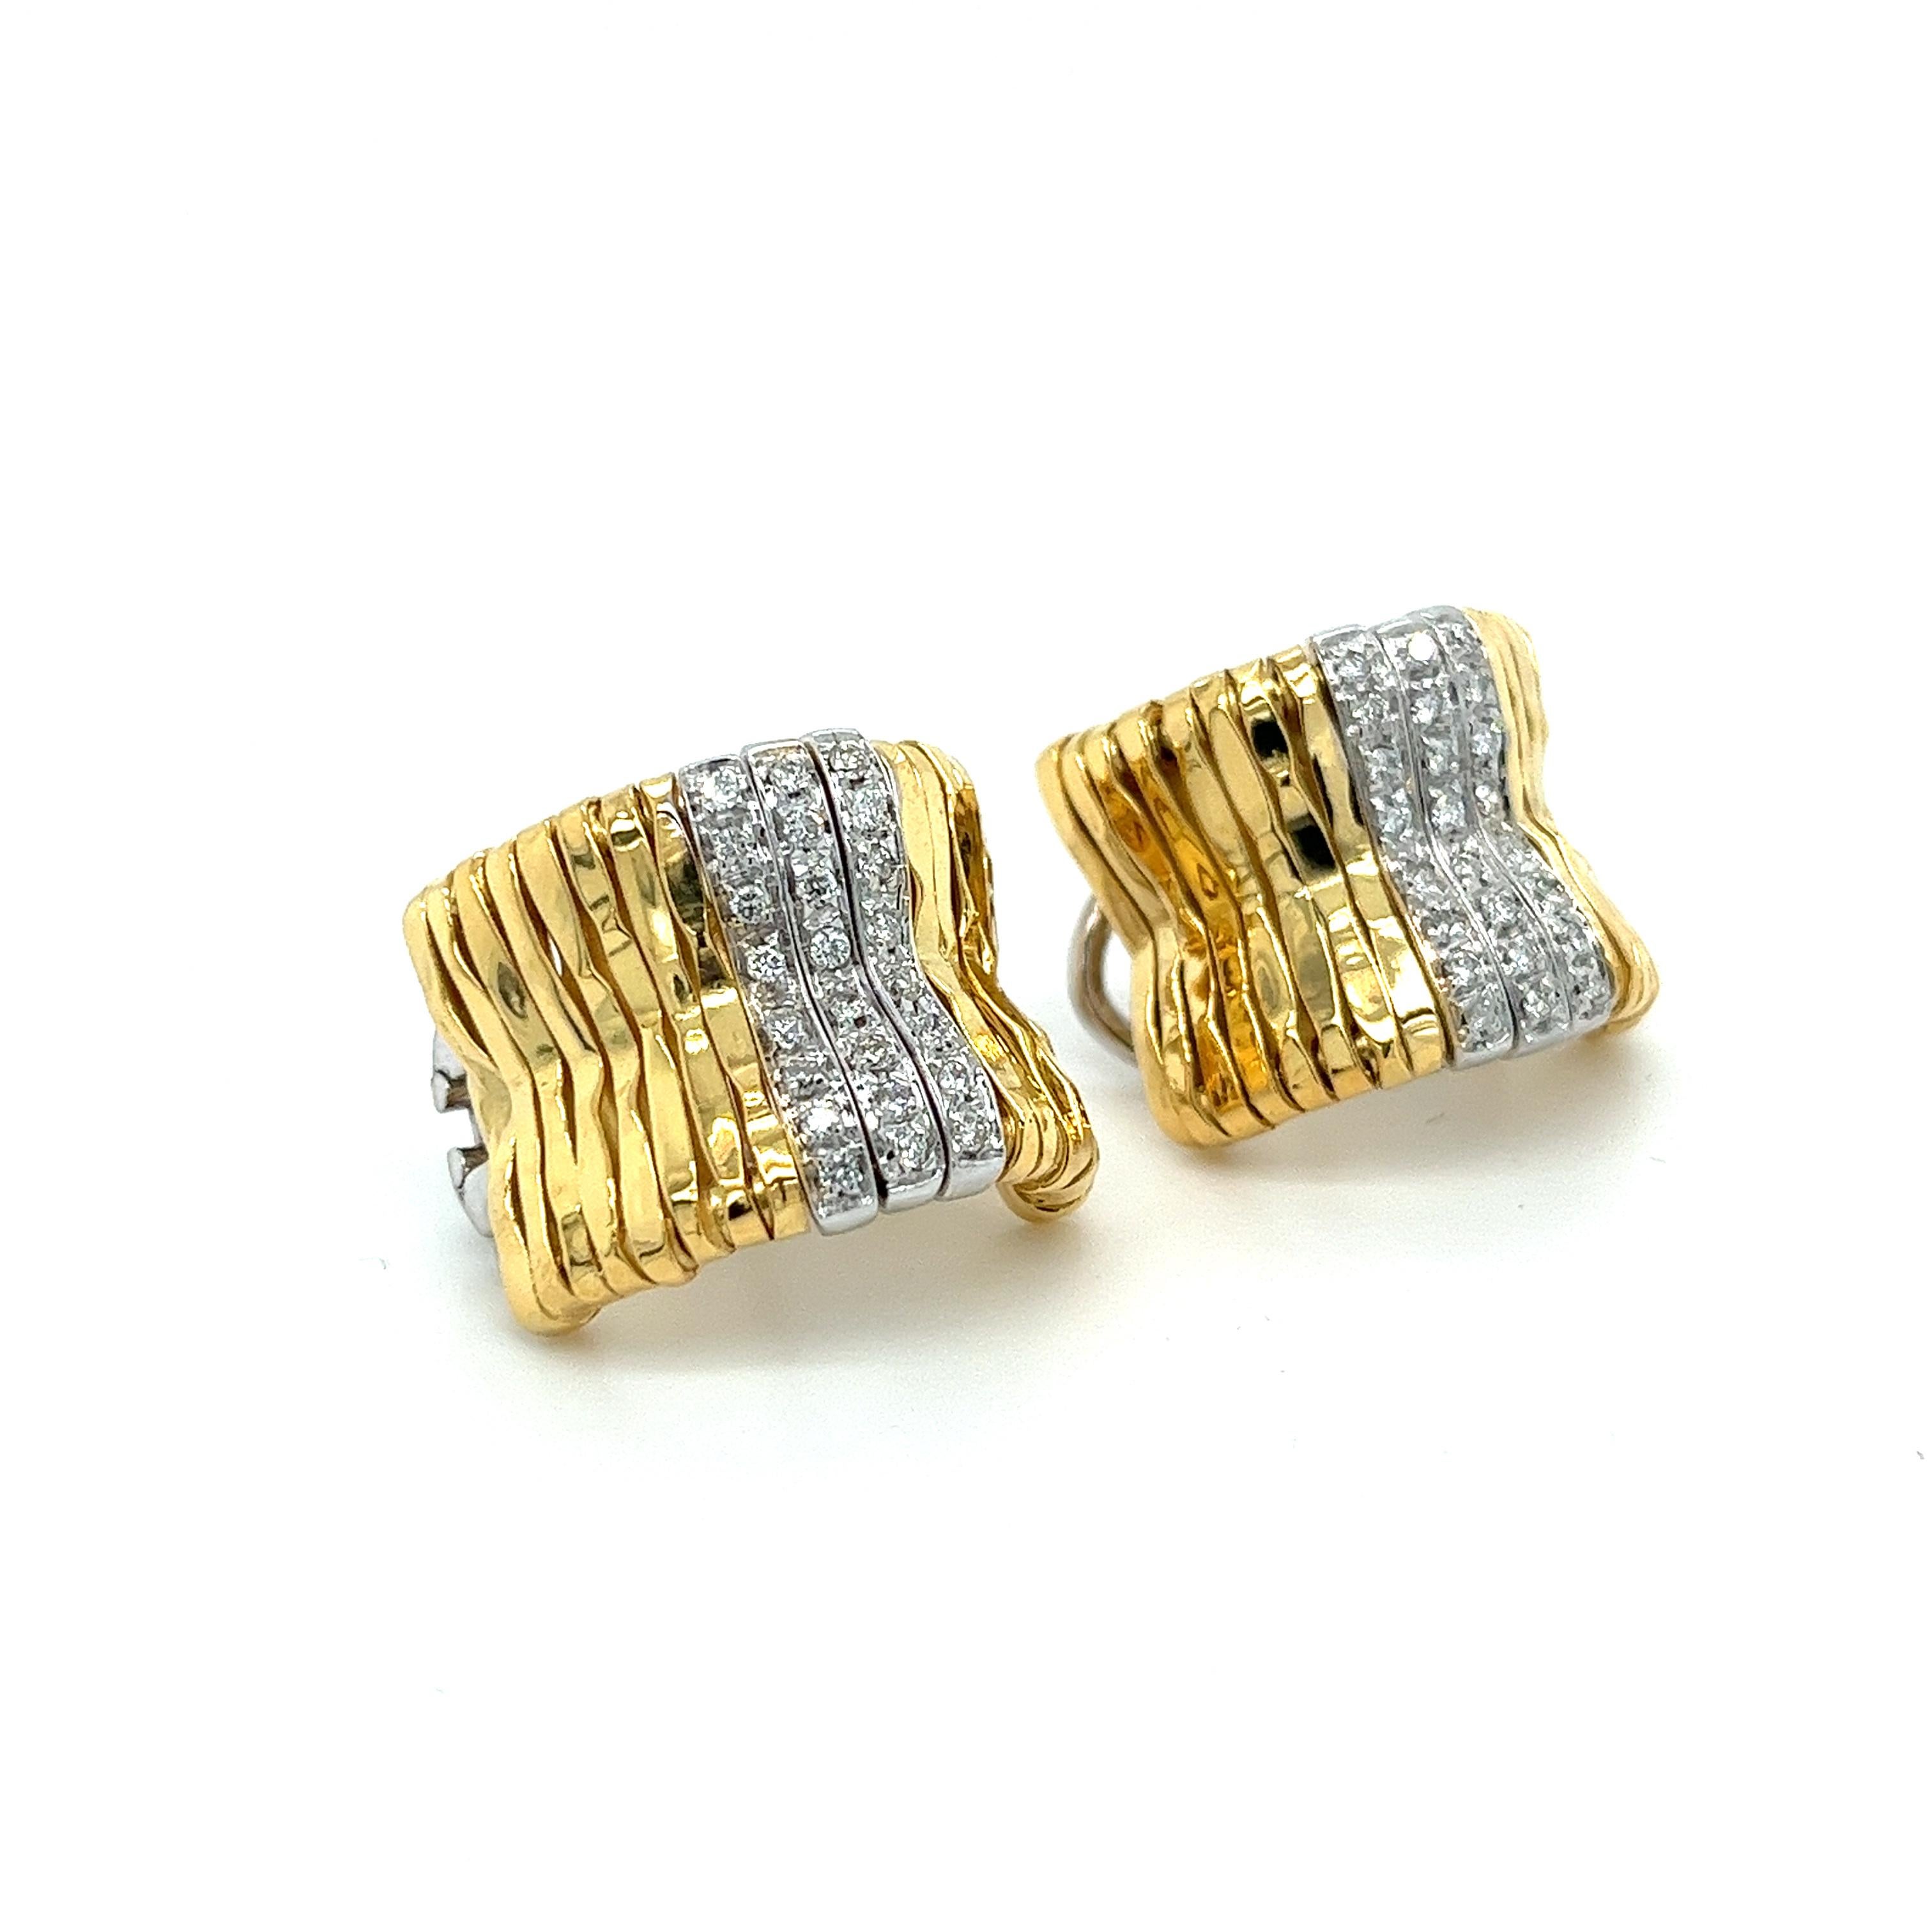 Boucles d'oreilles en or jaune 18K signées Orlando, avec 3 rangées de diamants ronds en or blanc. Ces boucles d'oreilles vintage présentent 48 diamants taille brillant d'environ 0,50 carats au total. Les montures sont dotées d'un dos de levier à la